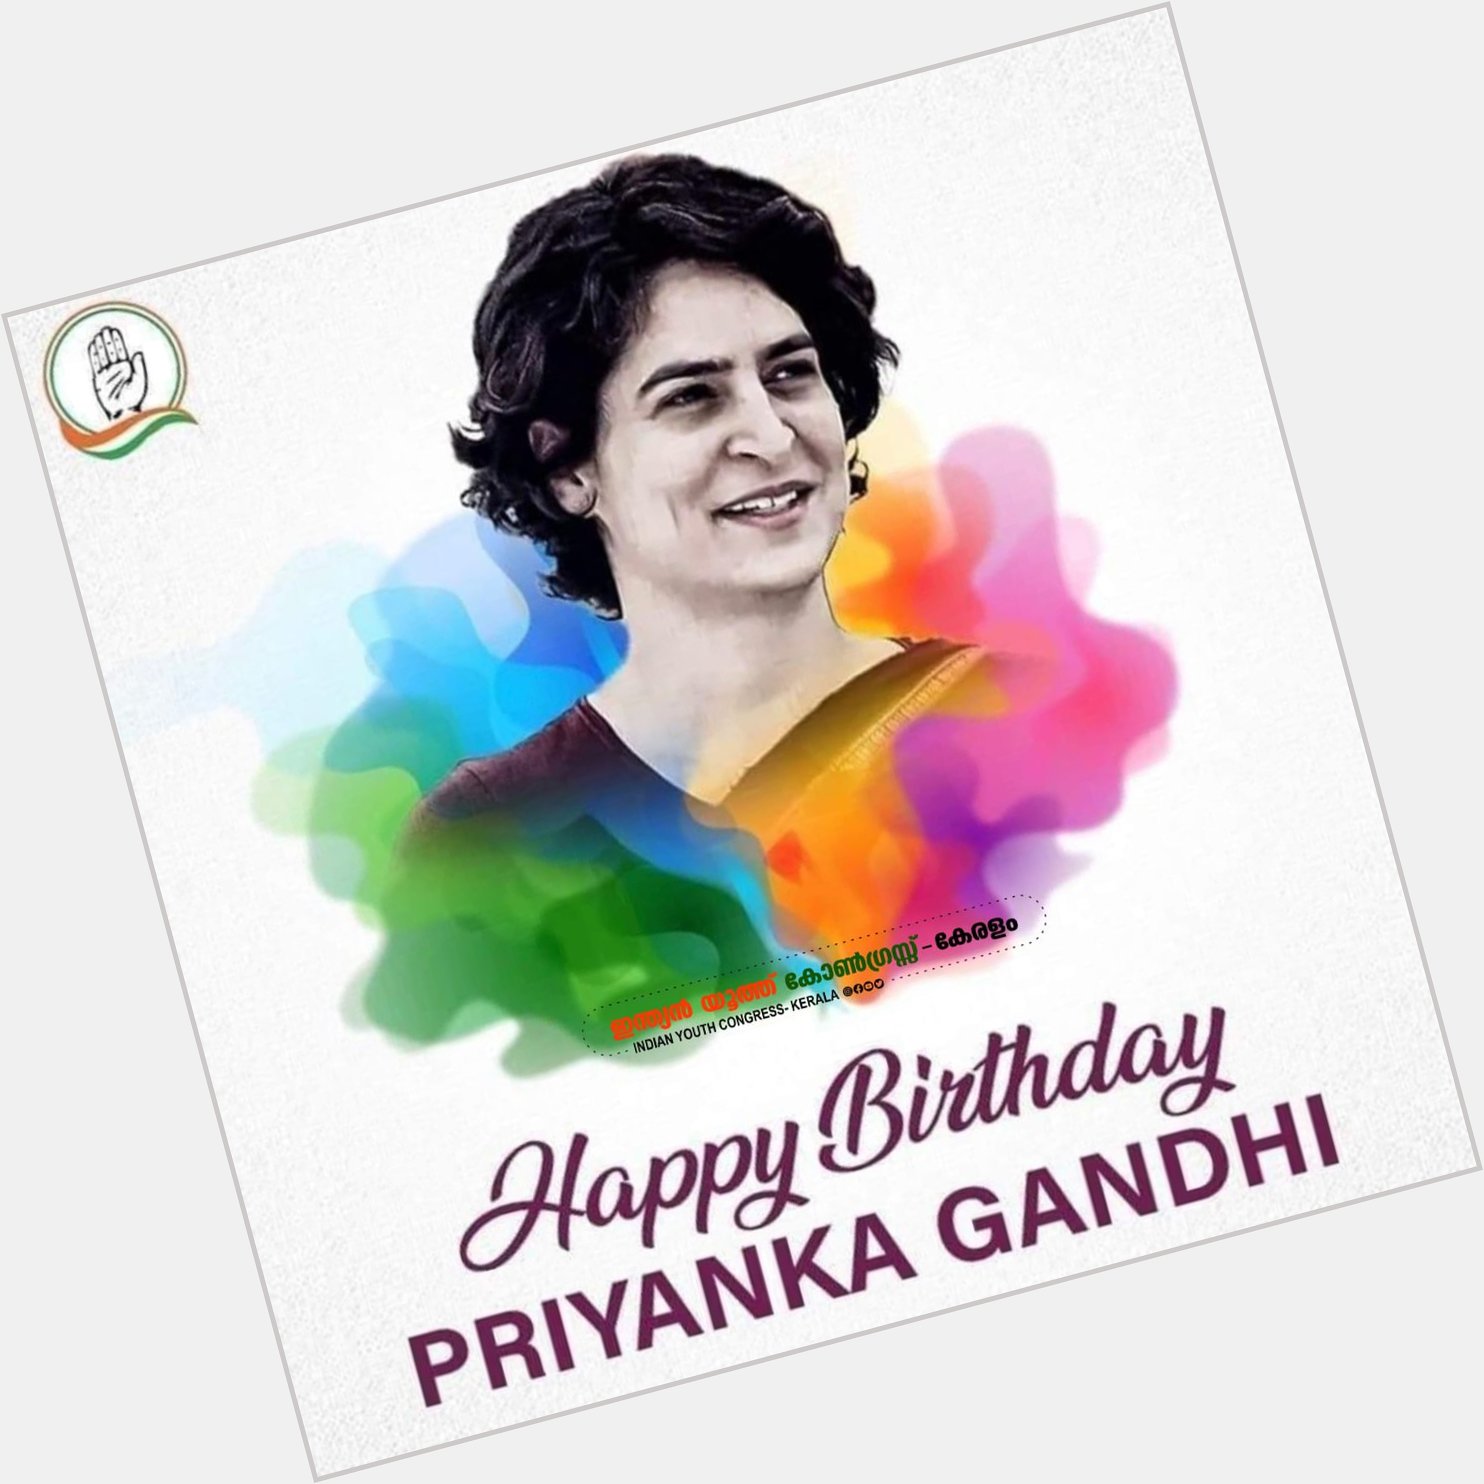 Happy birthday Priyanka gandhi.....  